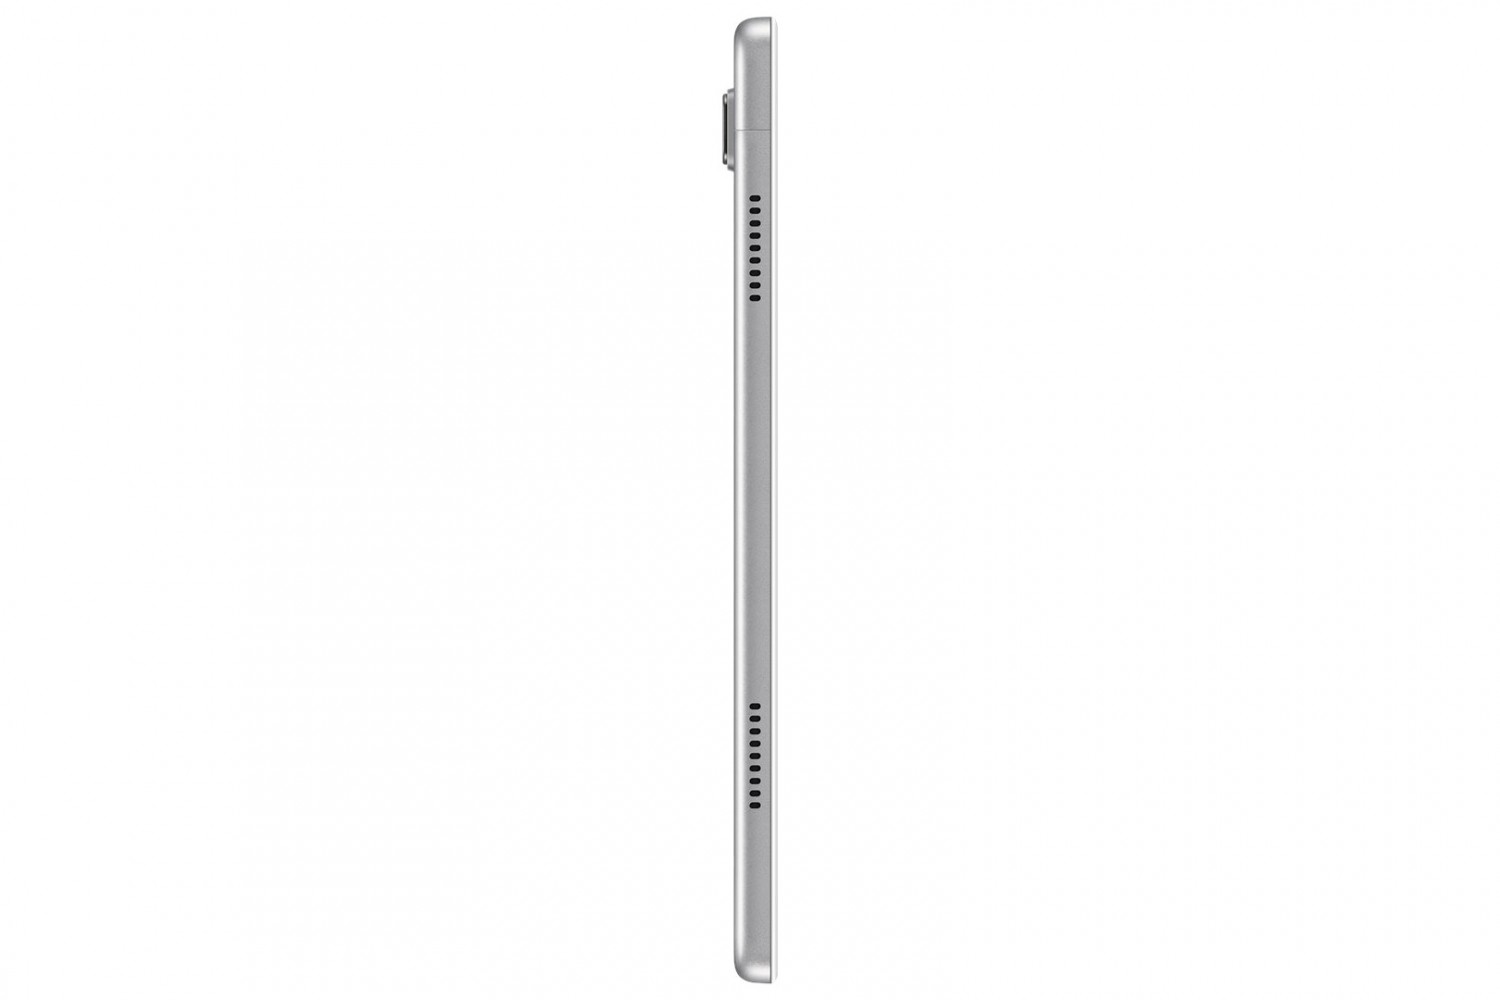 Samsung GalaxyTab A7 10.4 LTE (SM-T505) 3GB/32GB stříbrná